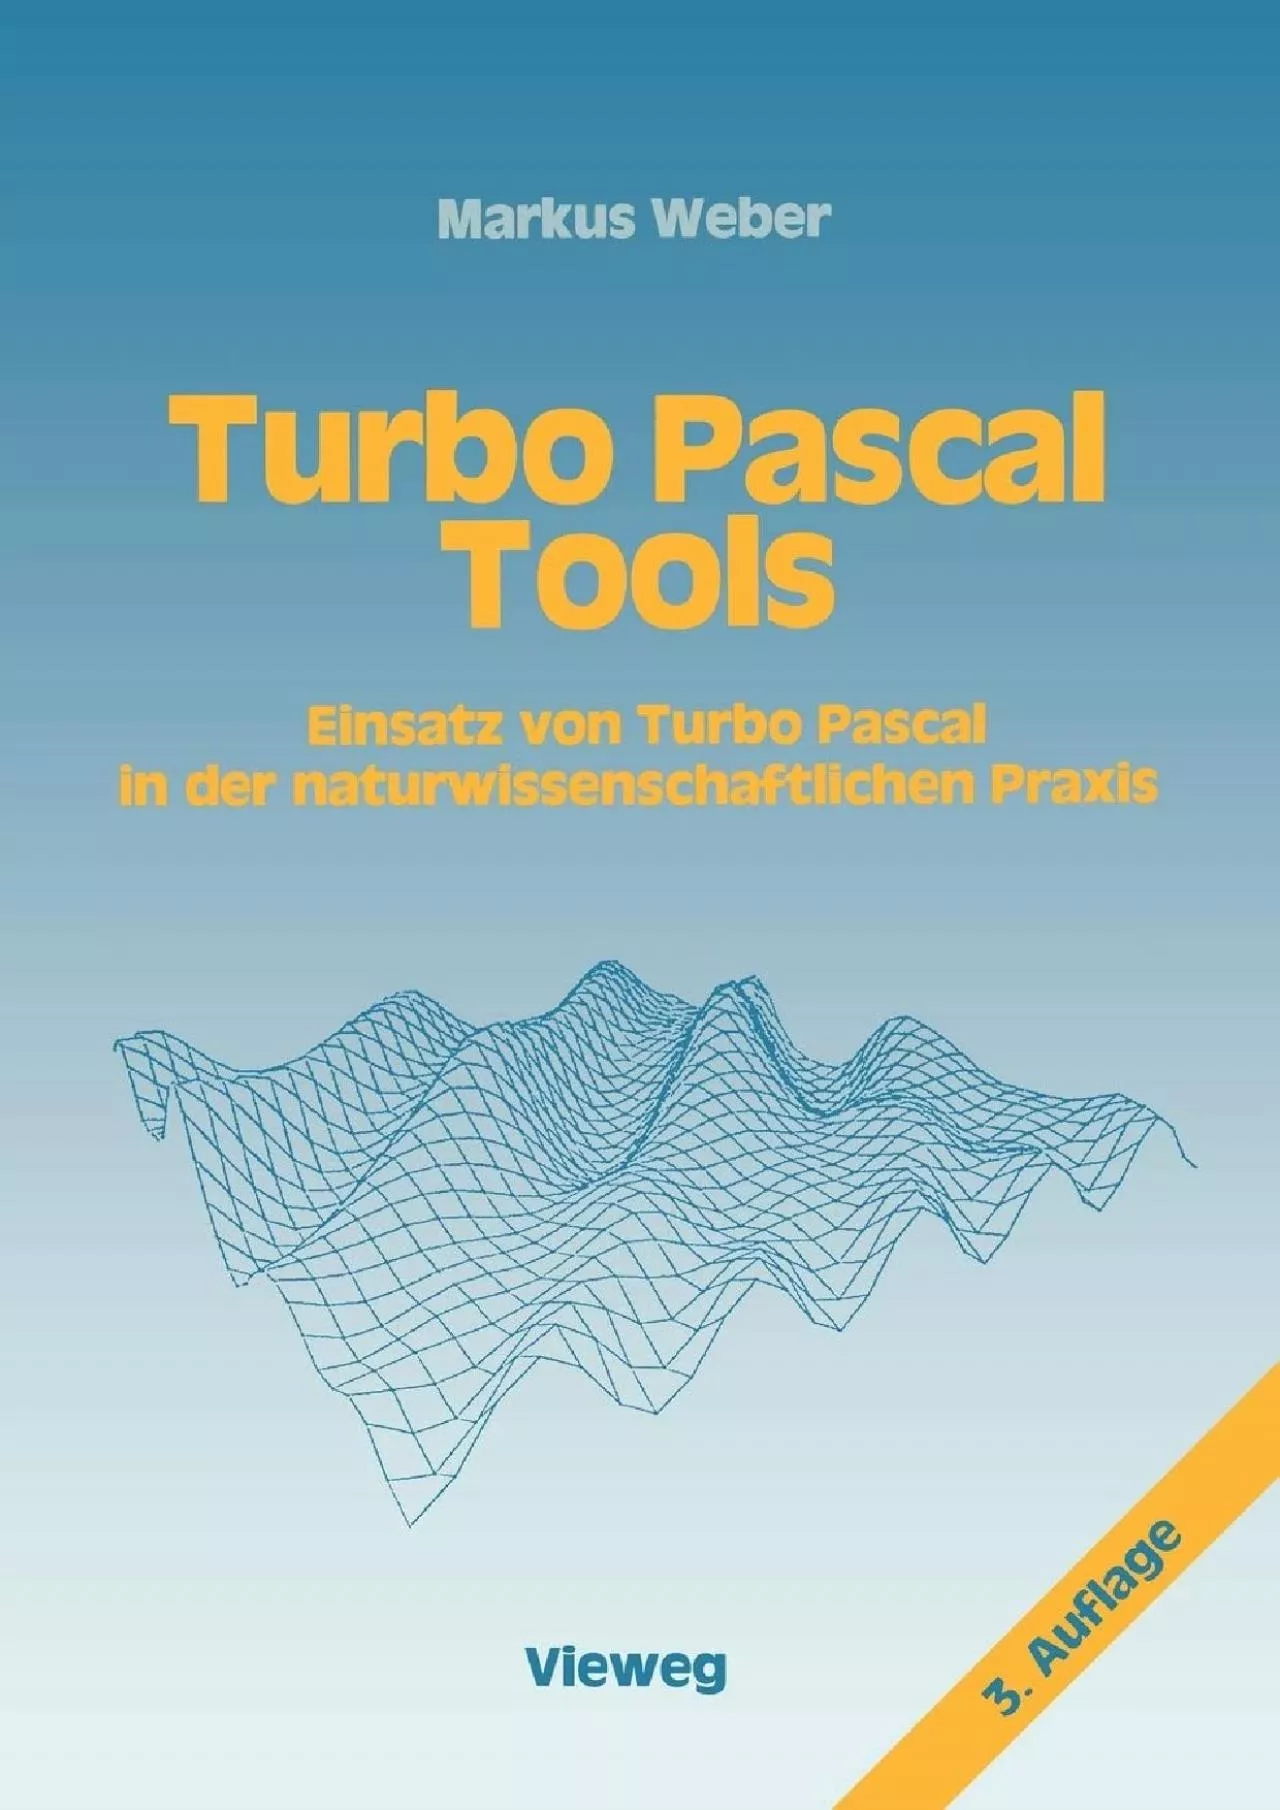 [BEST]-Turbo Pascal Tools: Einsatz von Turbo Pascal in der naturwissenschaftlichen Praxis